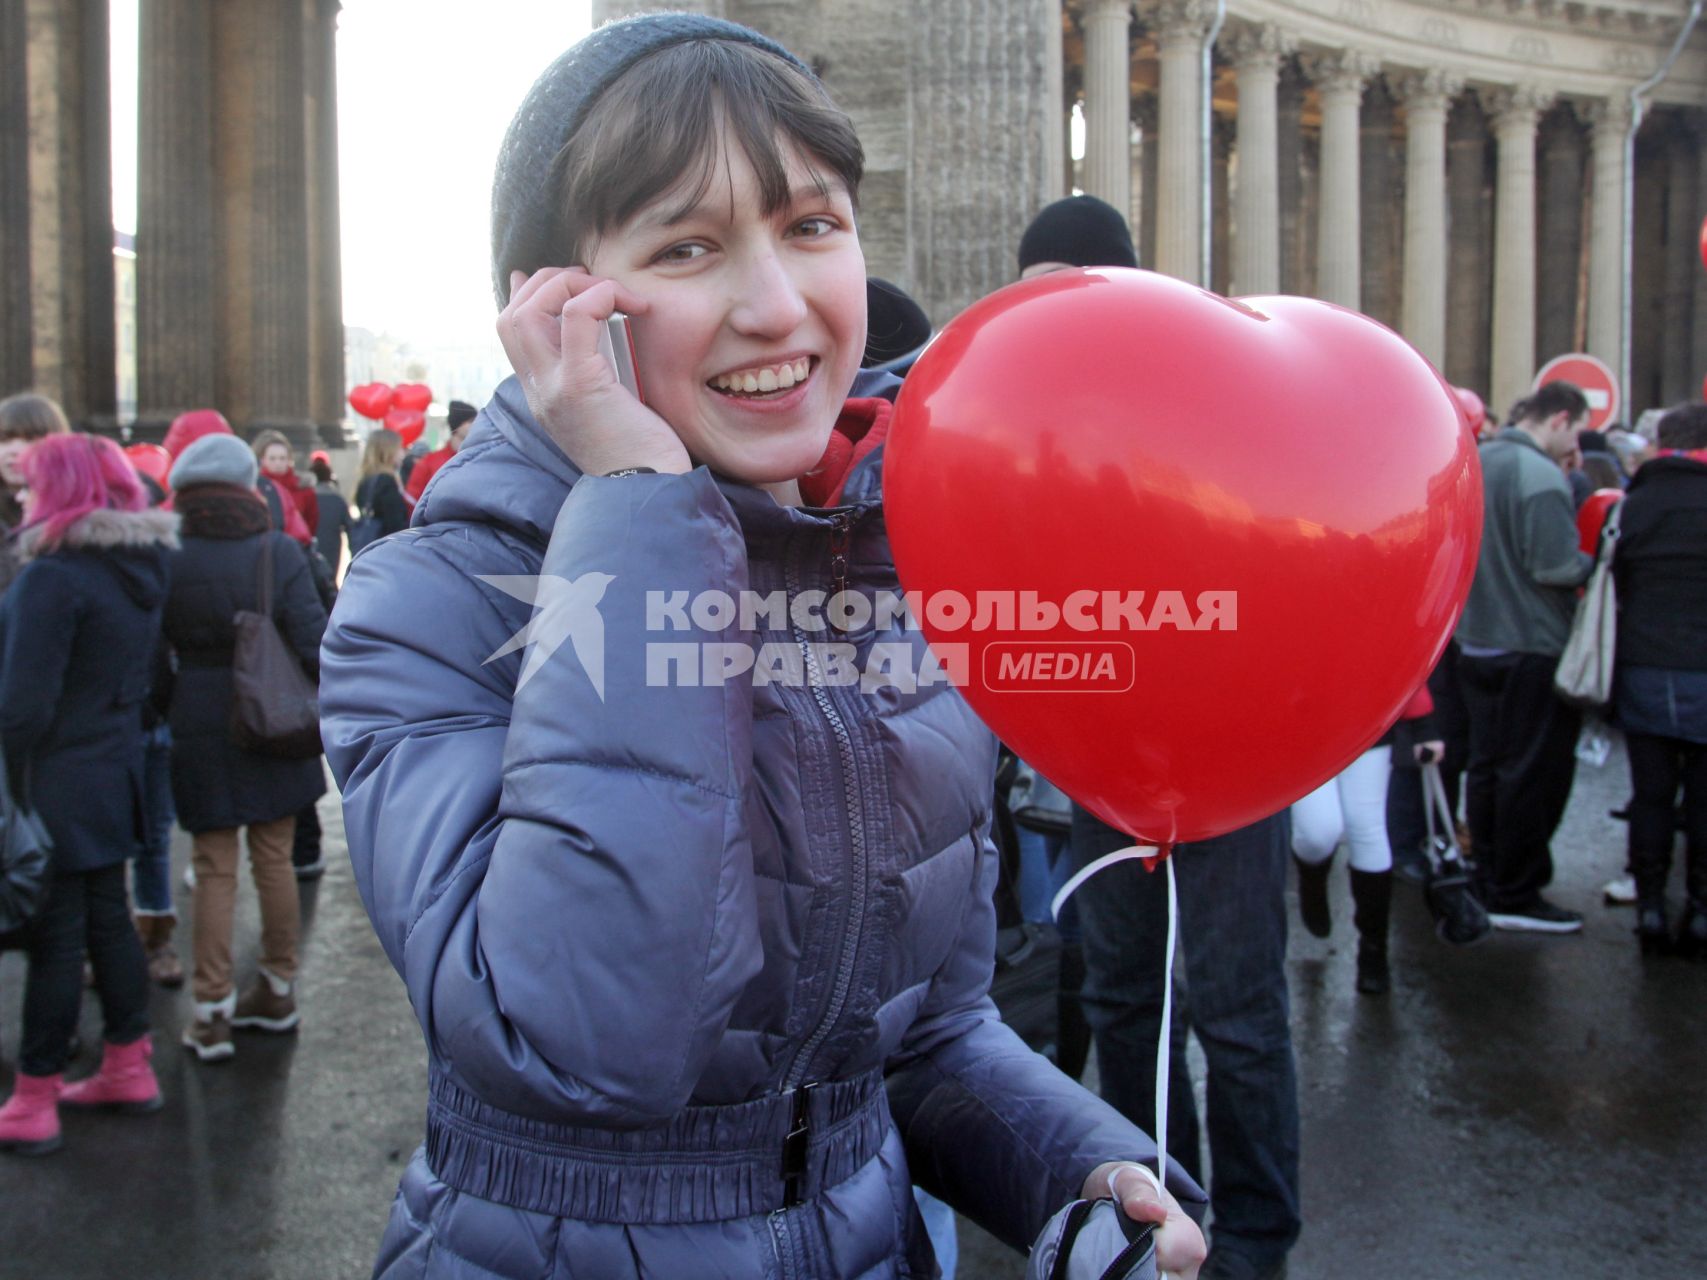 Акция в Санкт-Петербурге `Сердце города 2012` На снимке: девушка разговаривает по мобильному телефону, держит в руке надувной шарик в форме сердца.